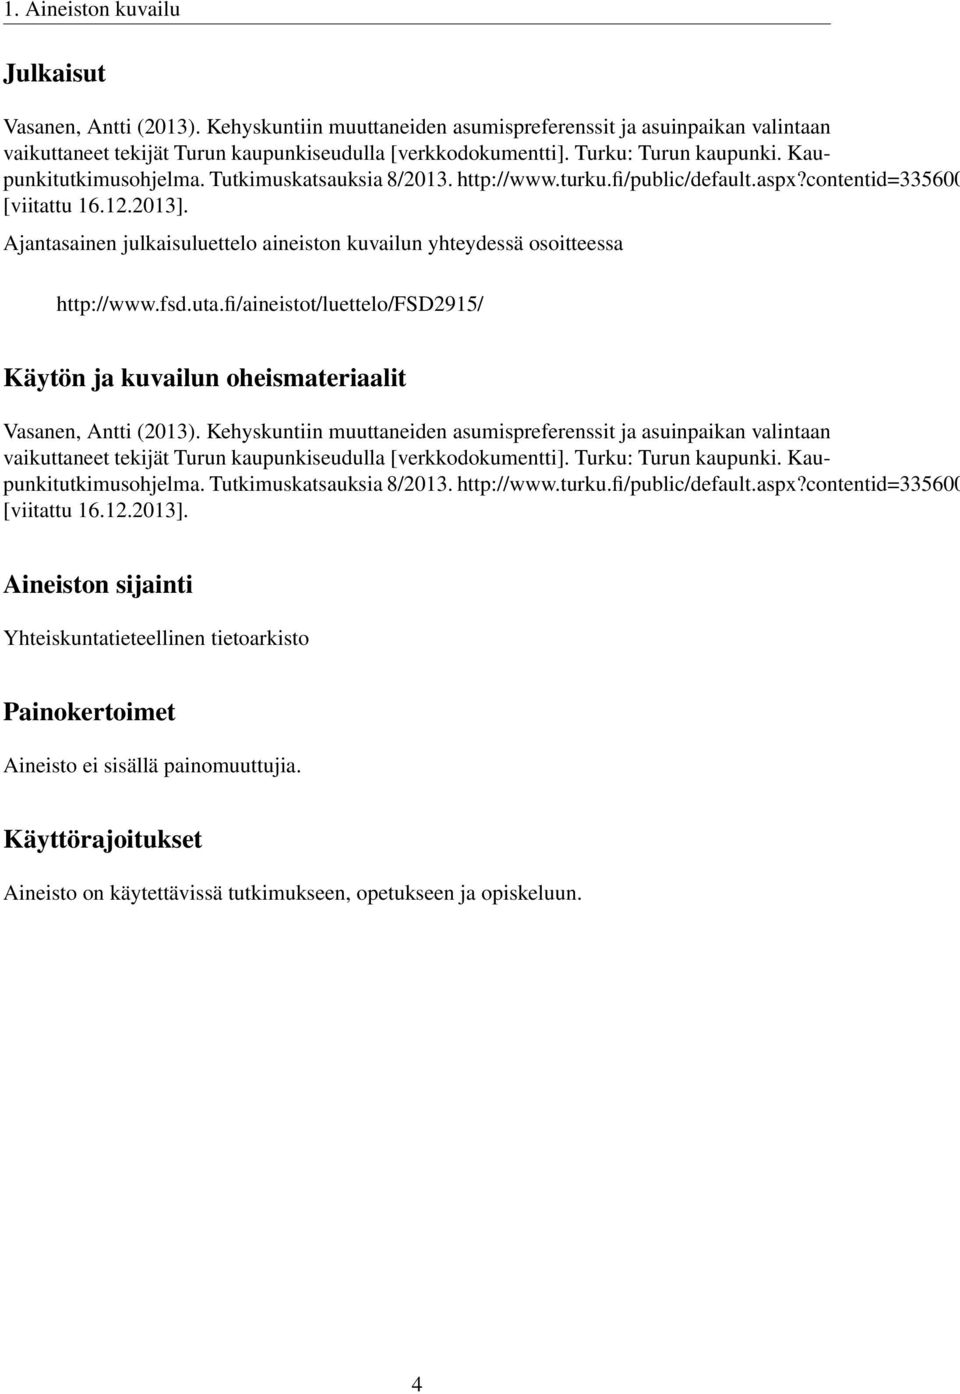 Ajantasainen julkaisuluettelo aineiston kuvailun yhteydessä osoitteessa http://www.fsd.uta.fi/aineistot/luettelo/fsd2915/ Käytön ja kuvailun oheismateriaalit Vasanen, Antti (2013).